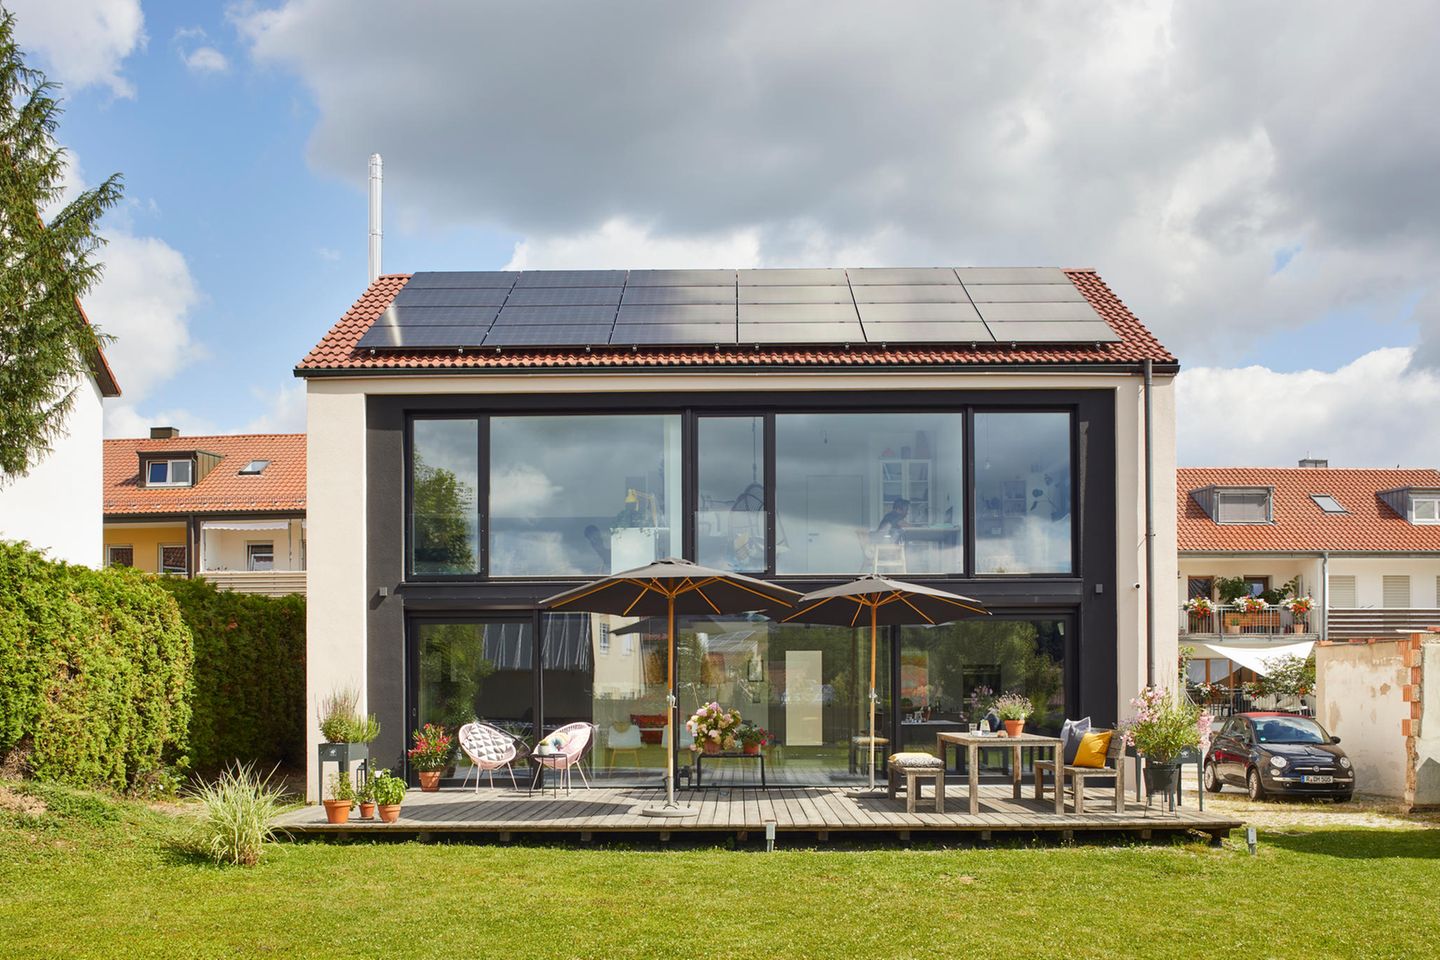 Holzterrasse und Gartenseite eines sanierten Hauses mit verglaster Fassade und Photovoltaikanlage auf dem Dach